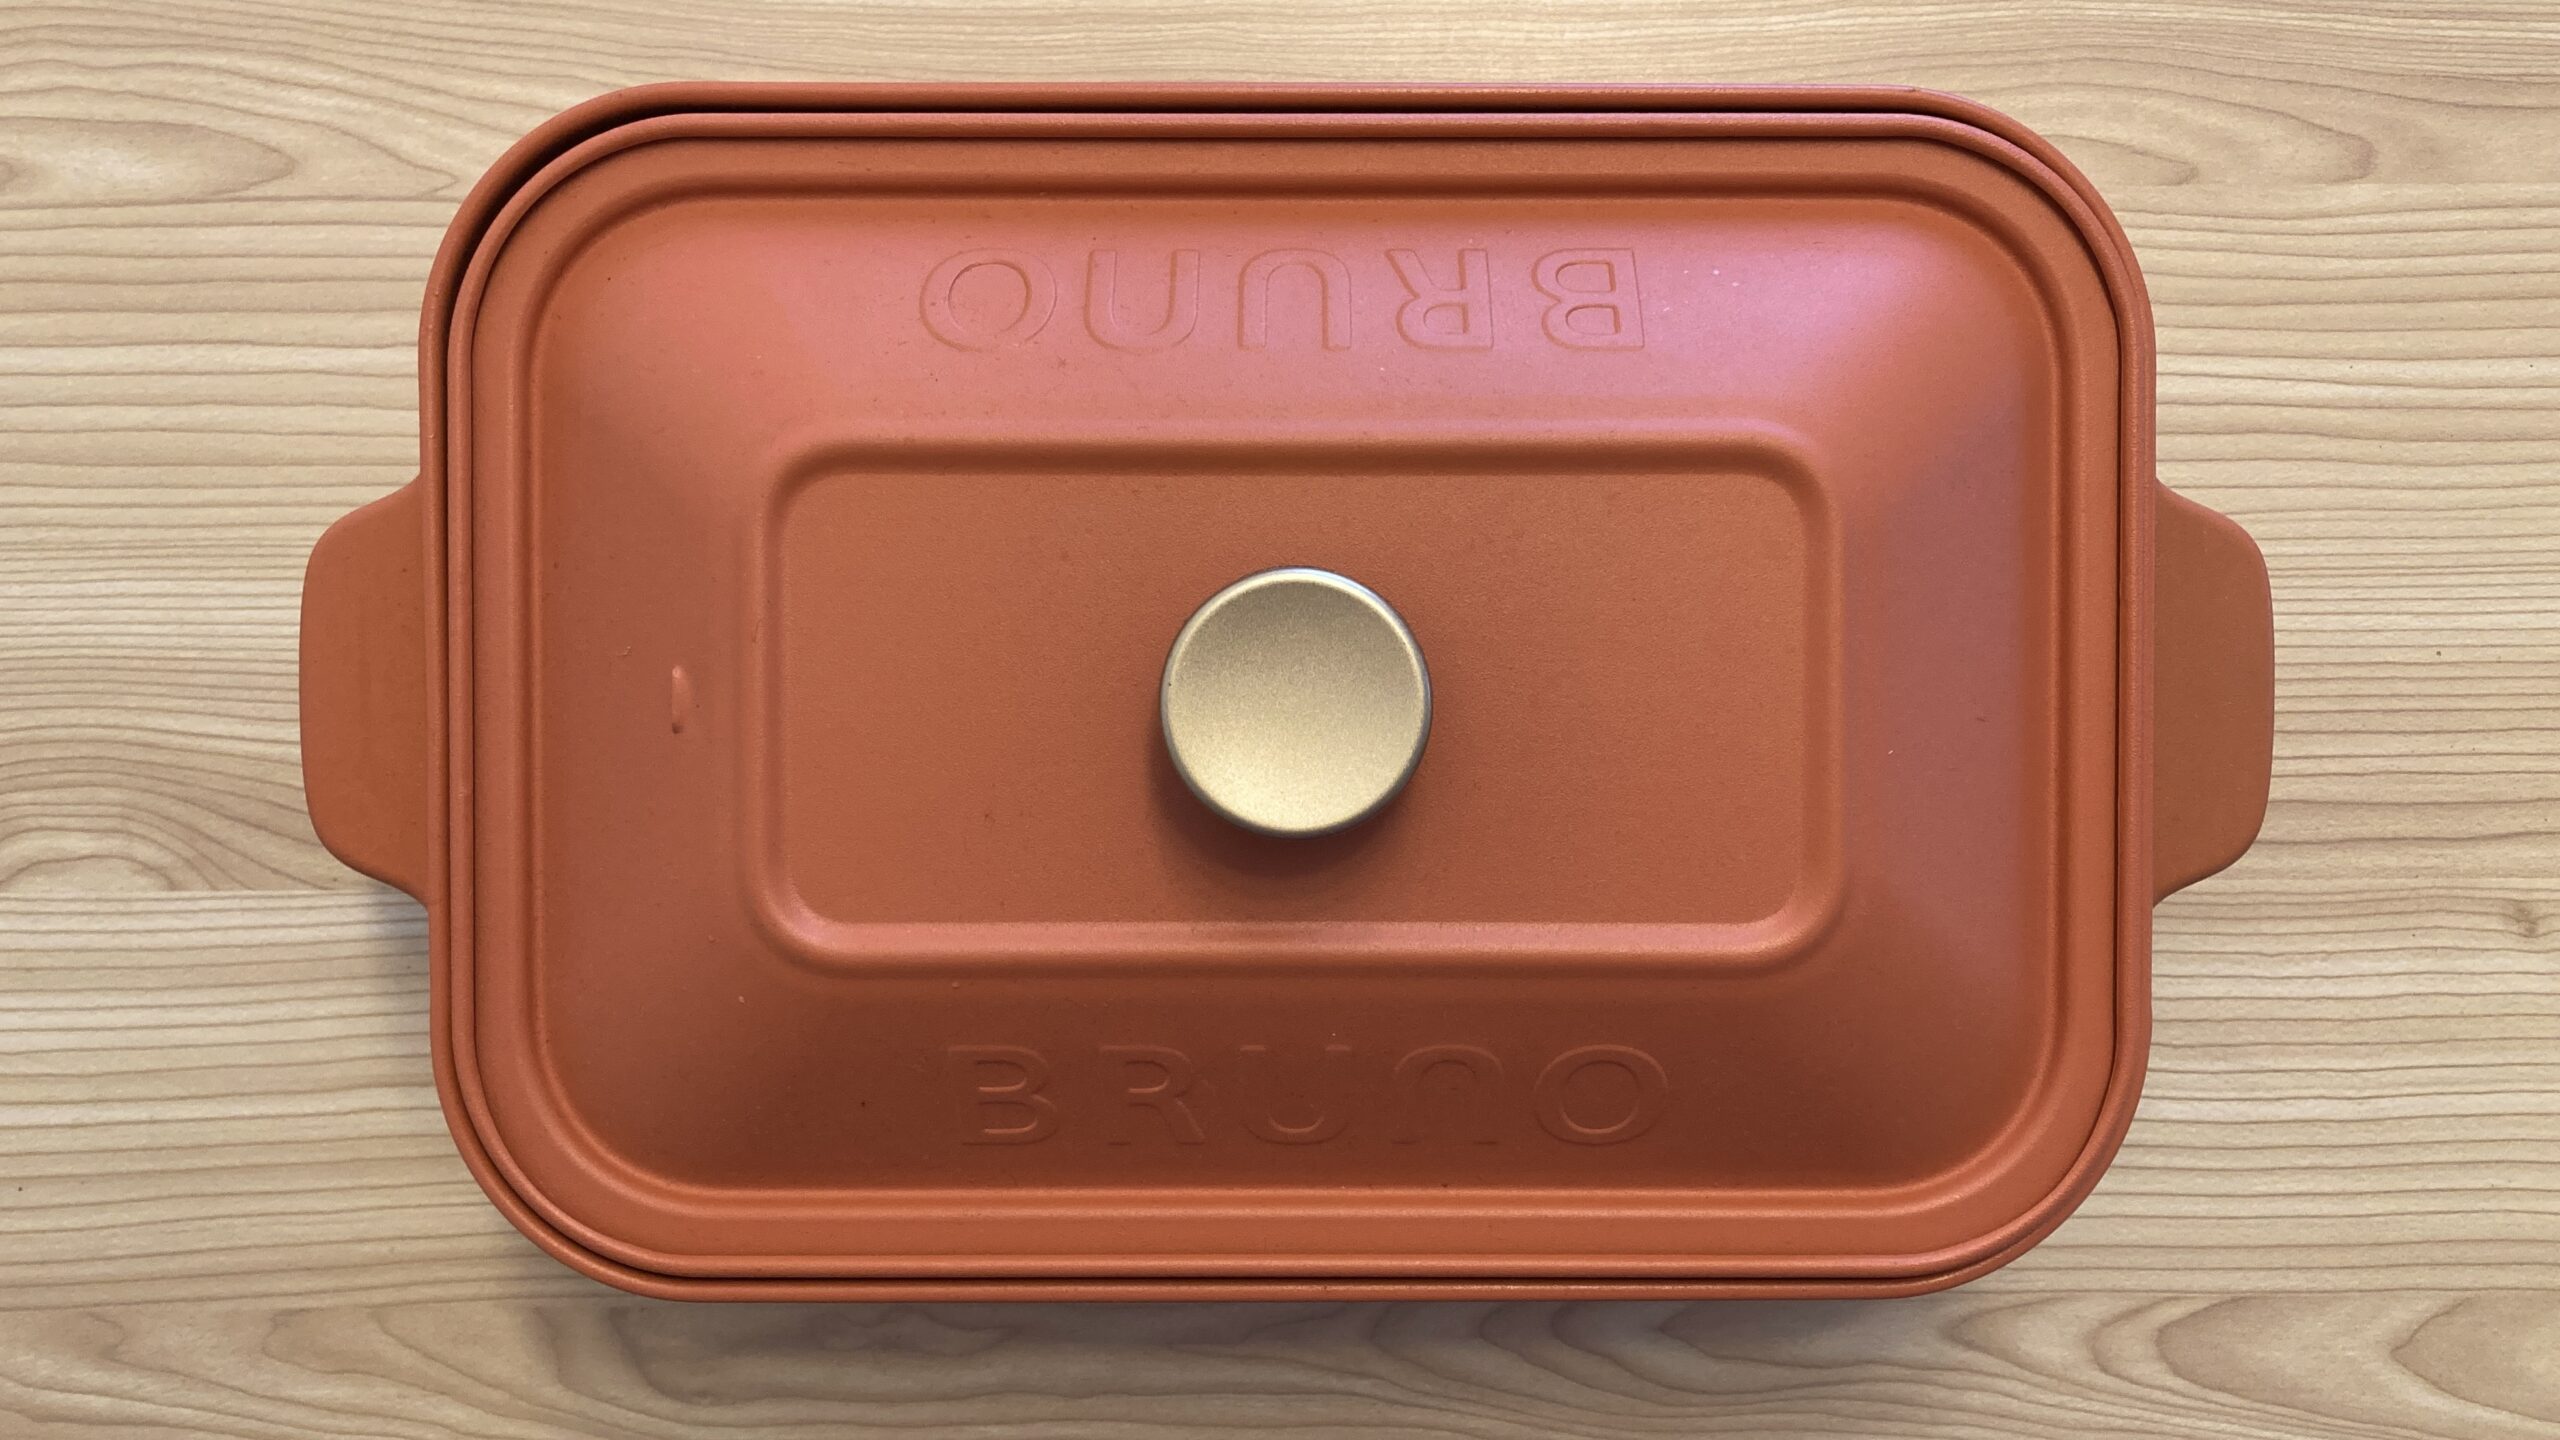 BRUNOコンパクトホットプレートのブログ用アイキャッチ画像。限定色のテラコッタオレンジ。